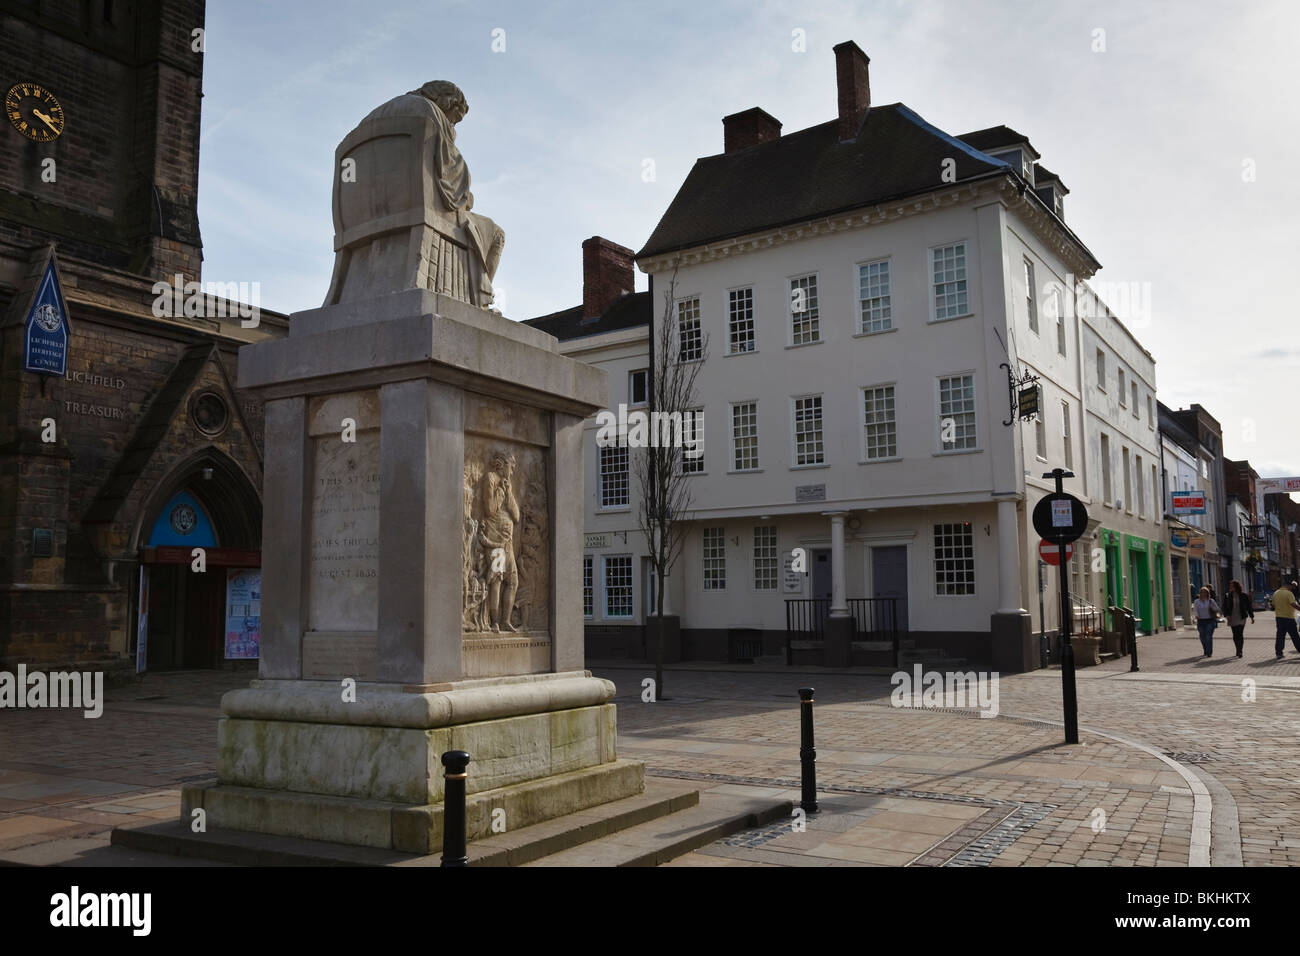 Museo Casa Natal de Johnson y la estatua del Dr. Samuel Johnson en la plaza del mercado, Lichfield, Staffordshire. Foto de stock